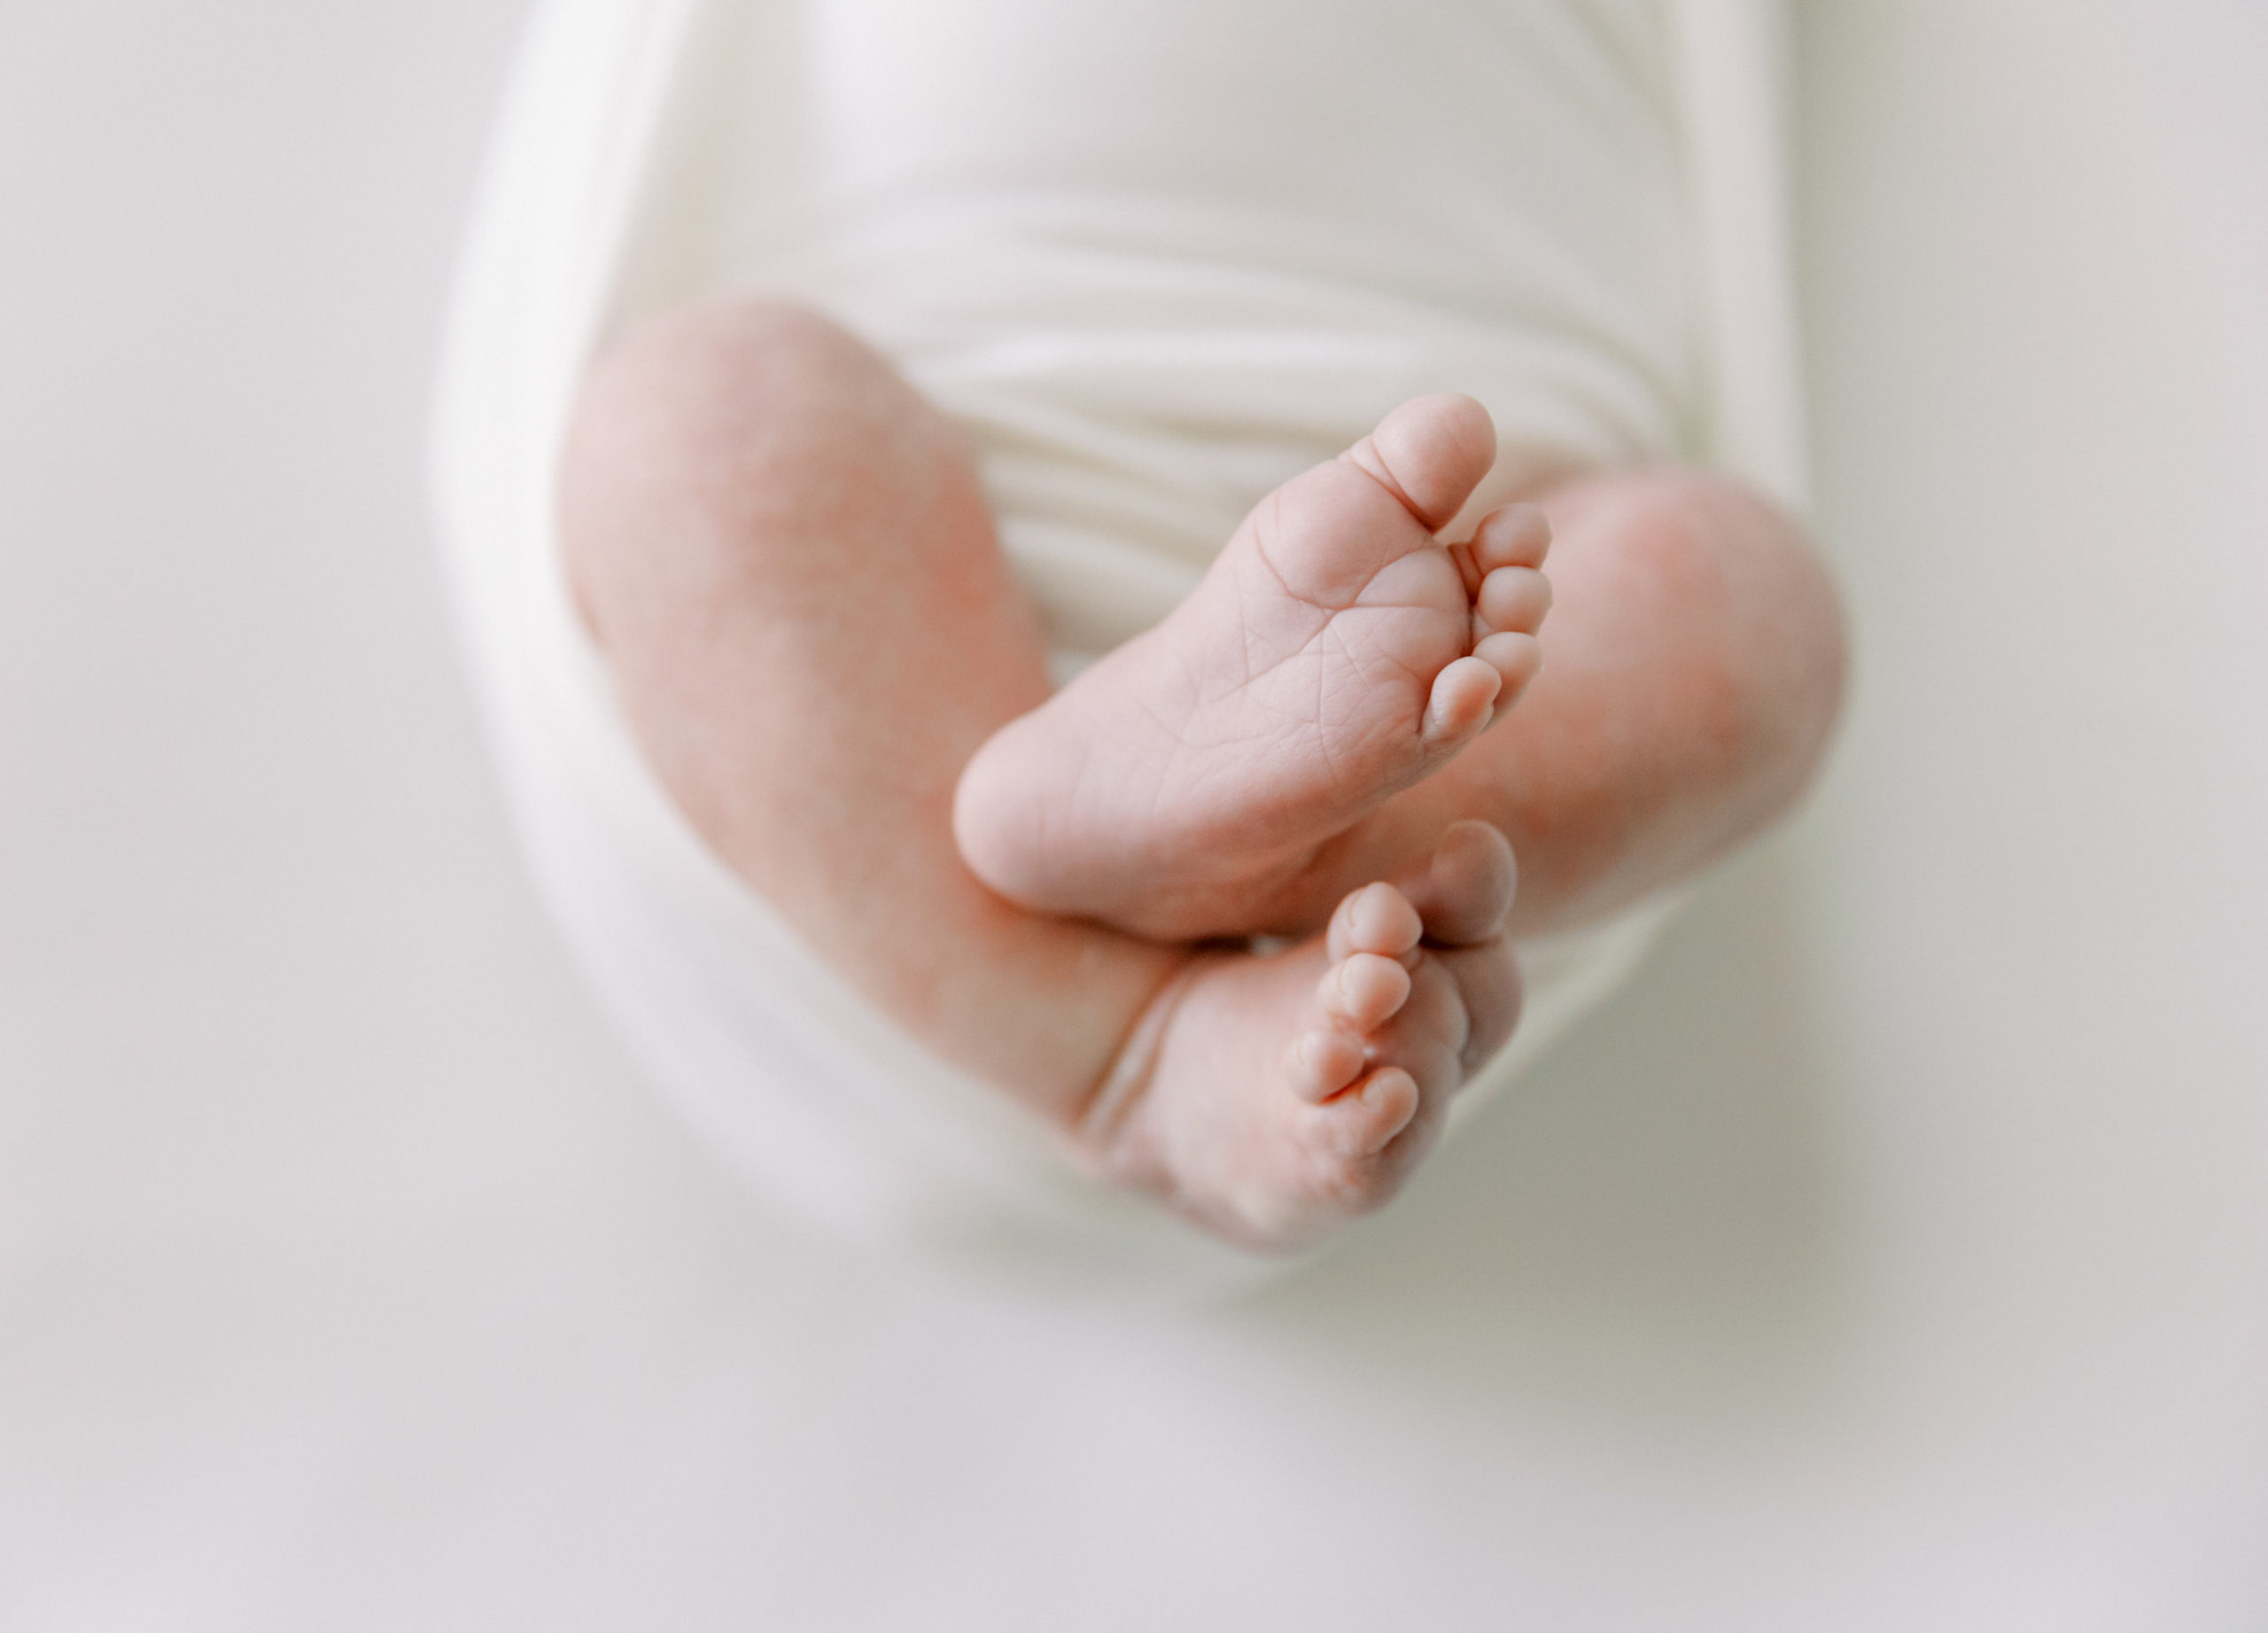 yuma-newborn-photographer-newborn-baby-toes-detail-image